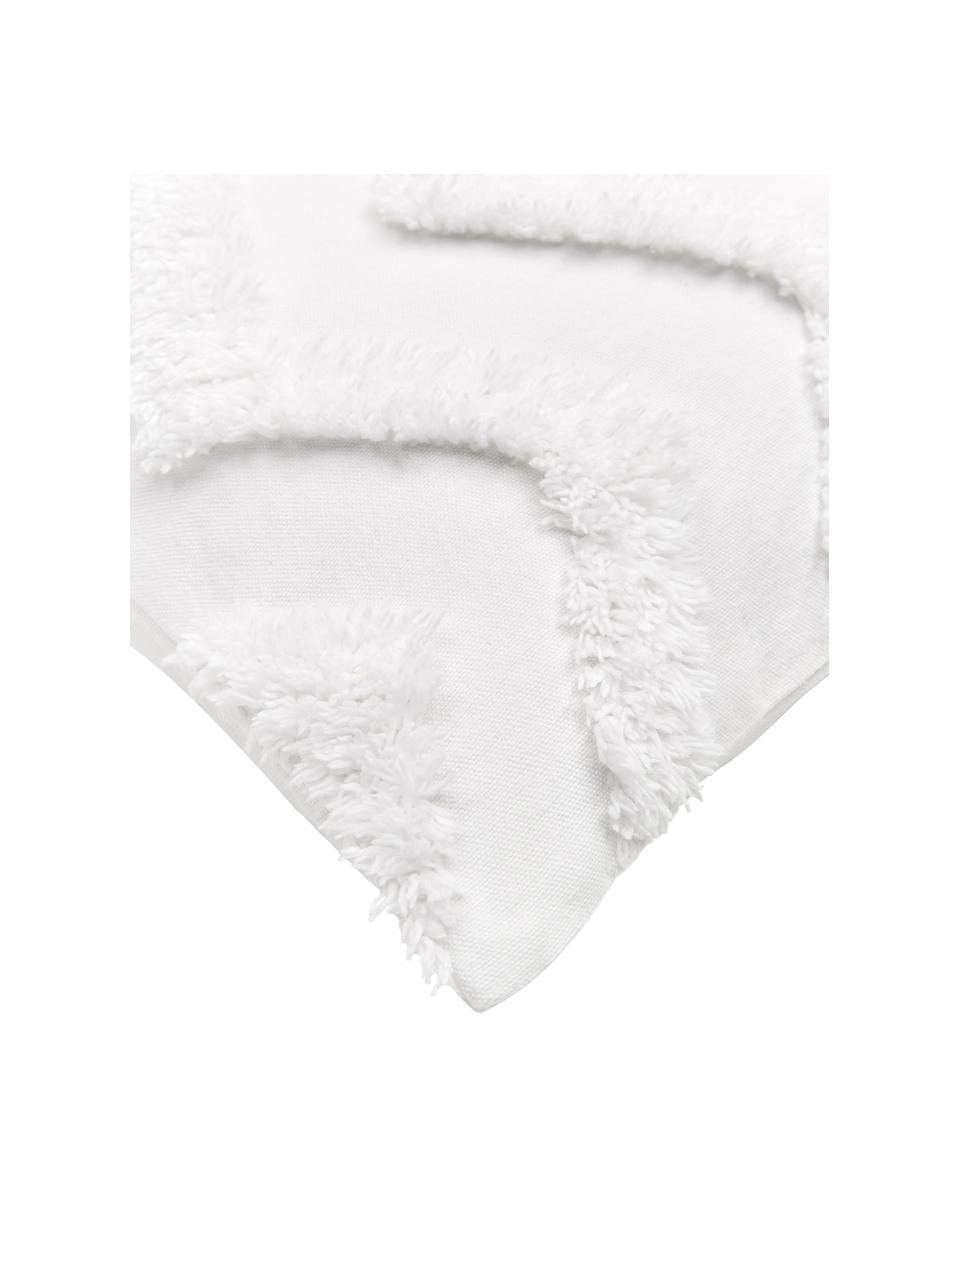 Poszewka na poduszkę Zack, 100% bawełna, Biały, S 30 x D 50 cm